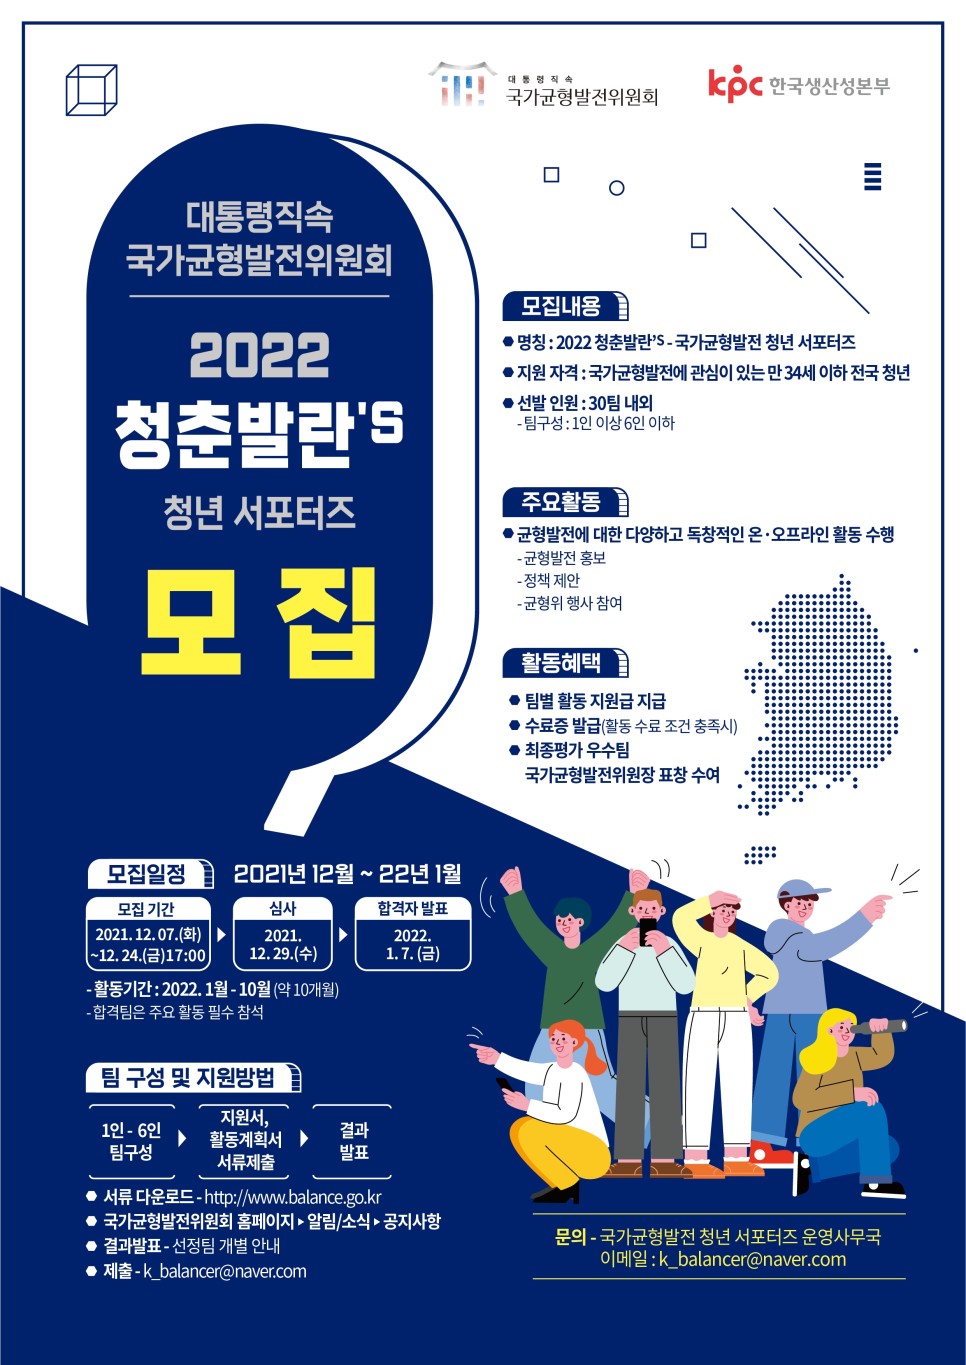 [모집안내] 국가균형발전위원회 2022 청춘발란'S 청년 서포터즈 모집1